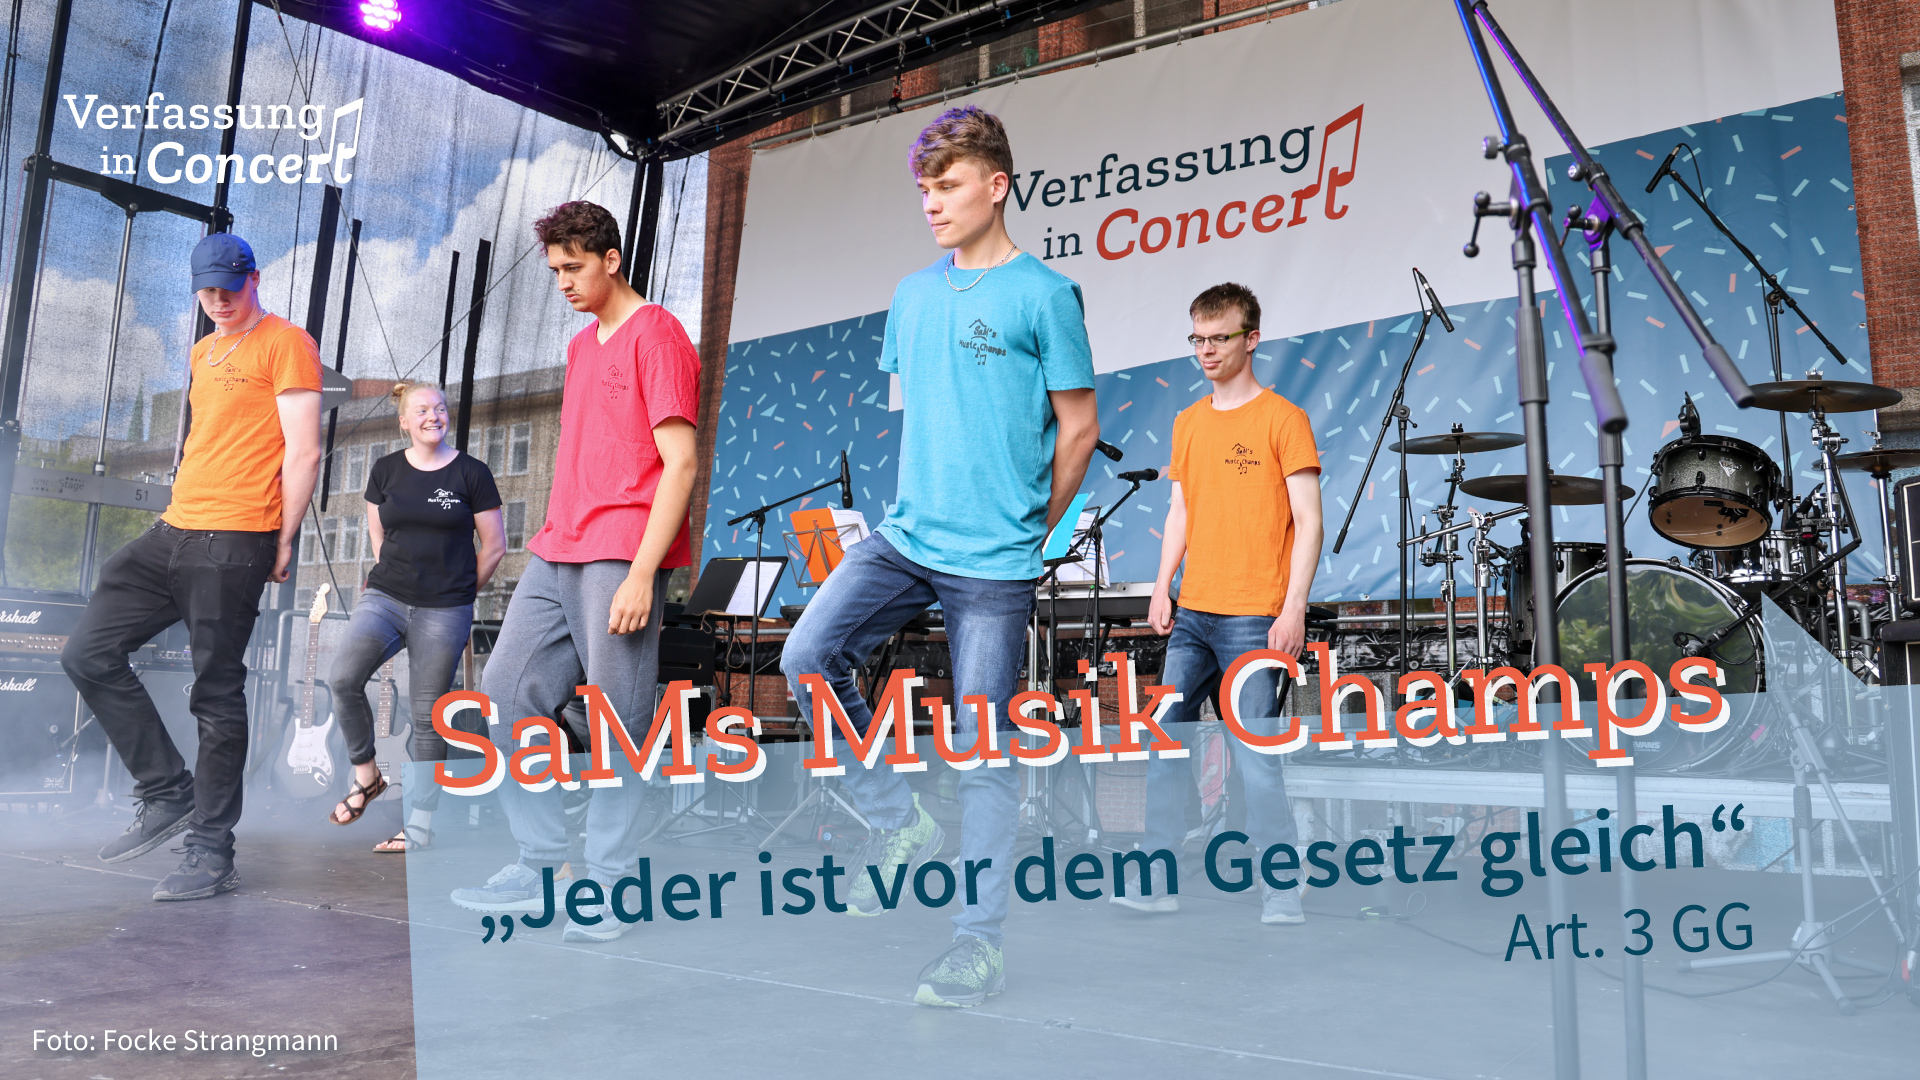 Die Band "SaMs Musik Champs" auf der Bühne.